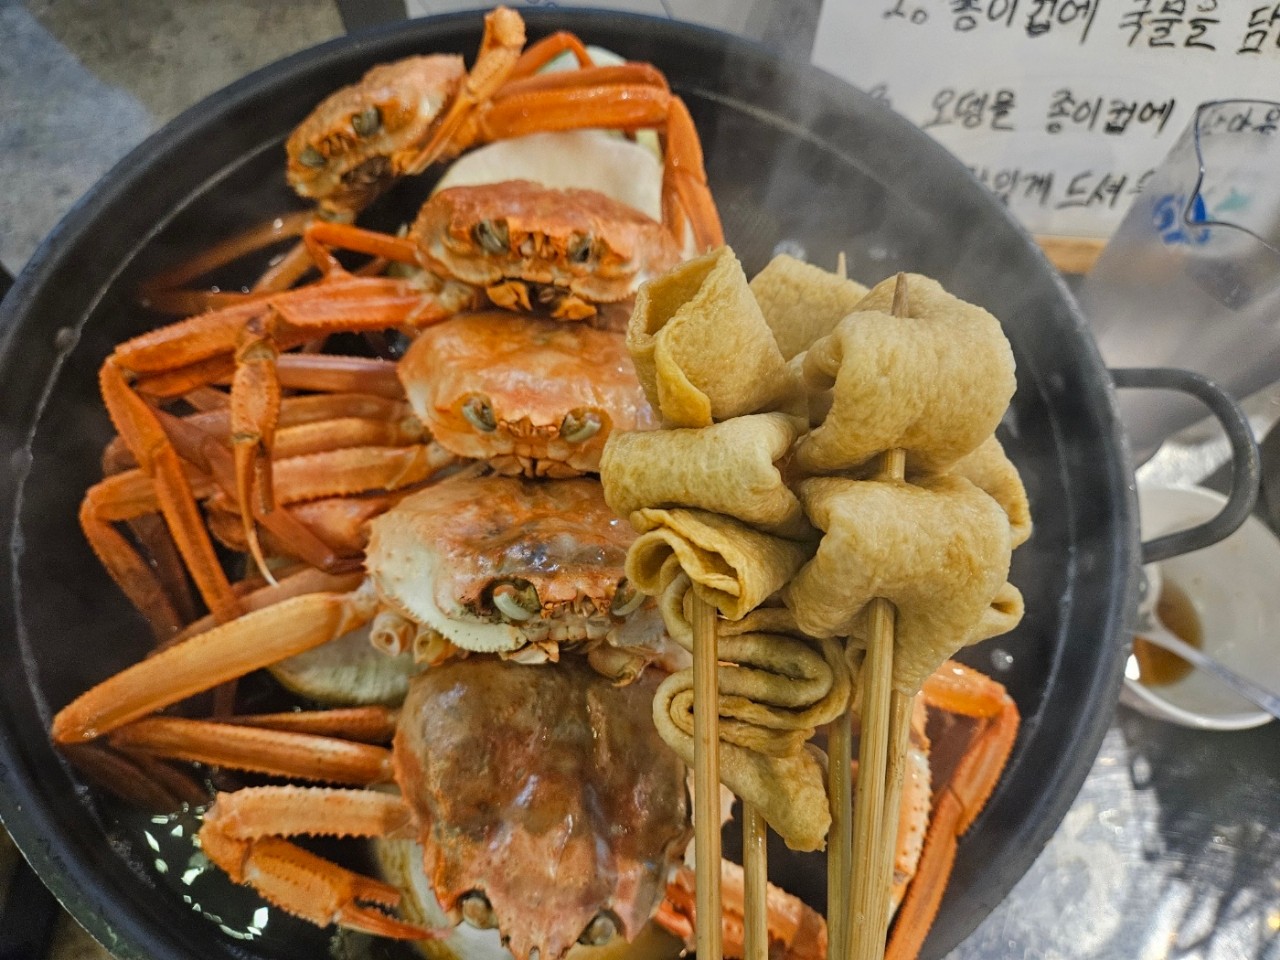 음식, 해산물, 요리, 갑각류이(가) 표시된 사진

자동 생성된 설명